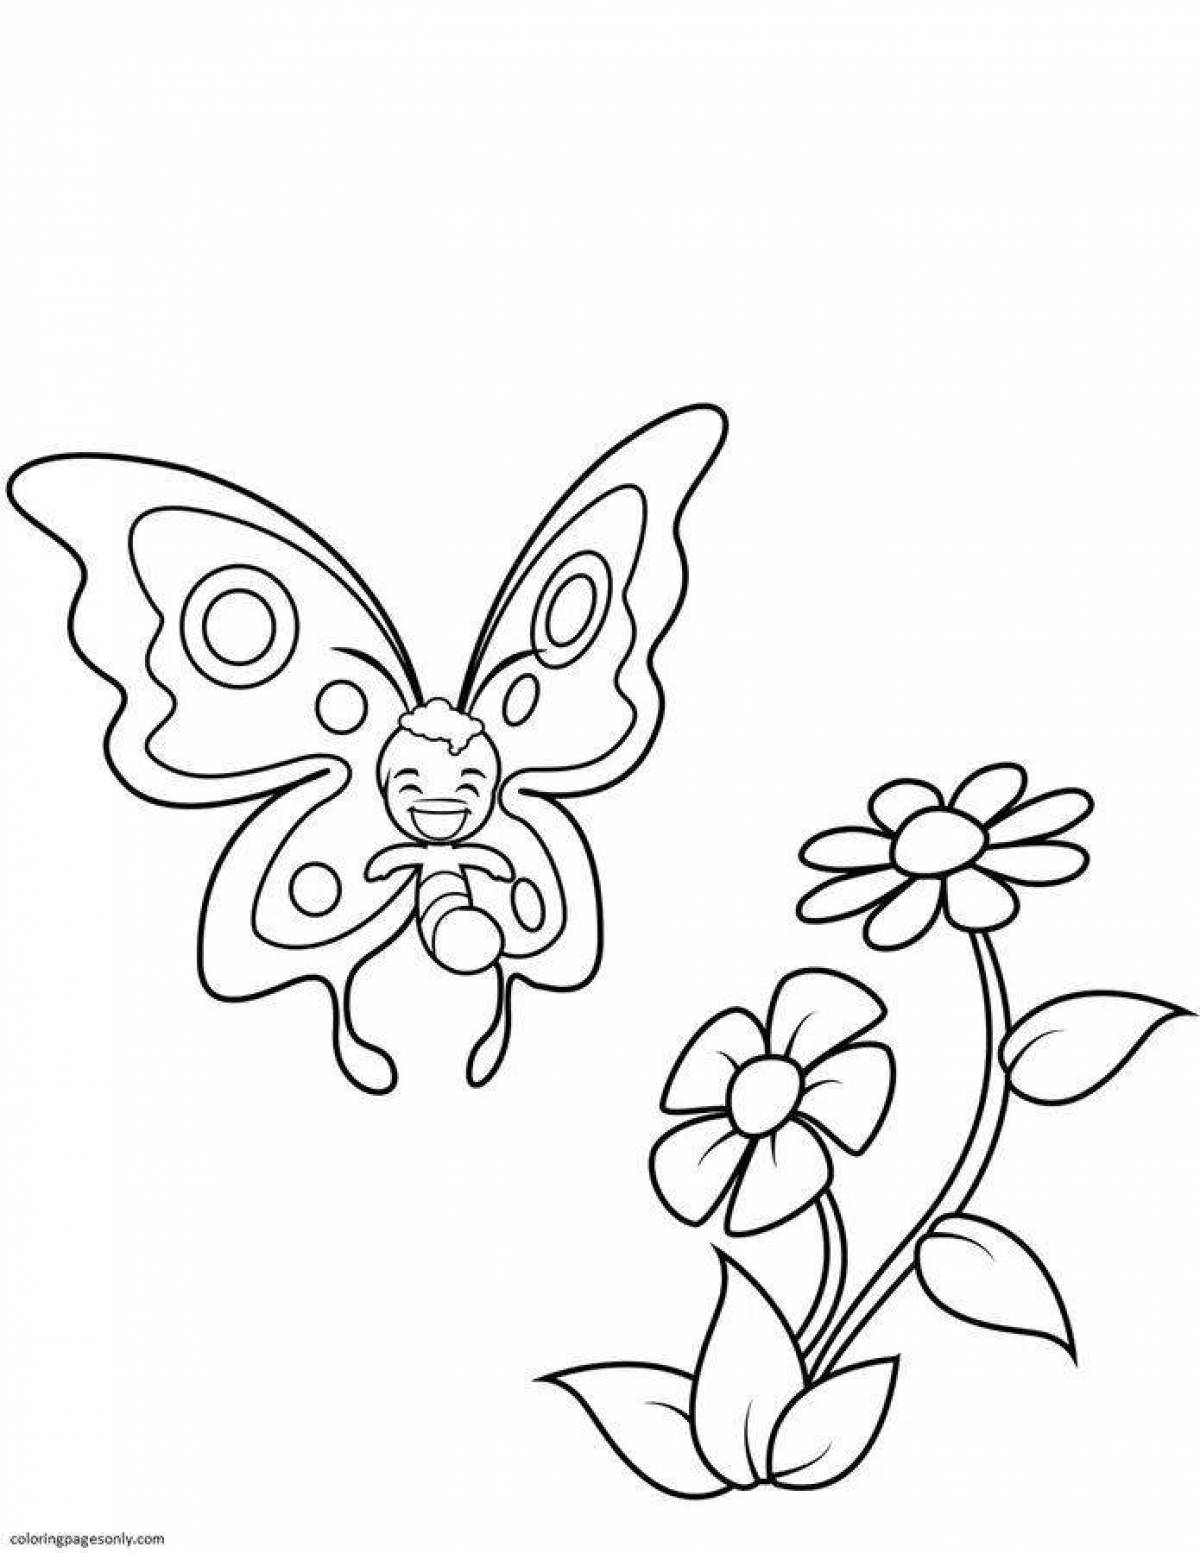 Раскраска Цветы и бабочки распечатать или скачать